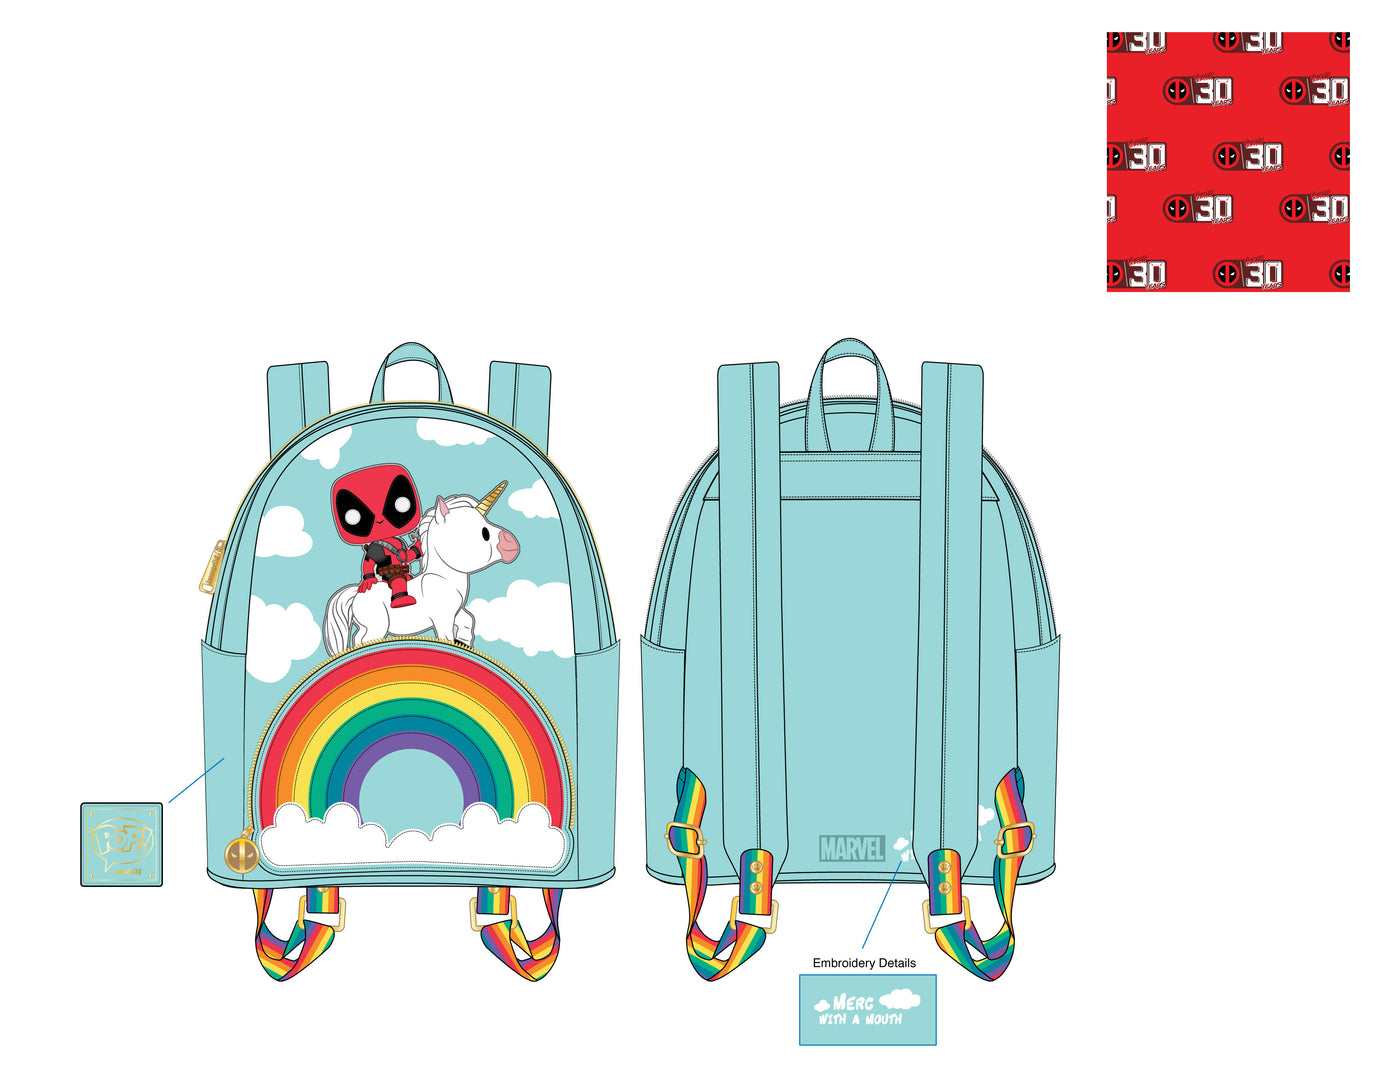 Marvel Pop! Deadpool 30th Anniversary Unicorn Rainbow Mini Backpack